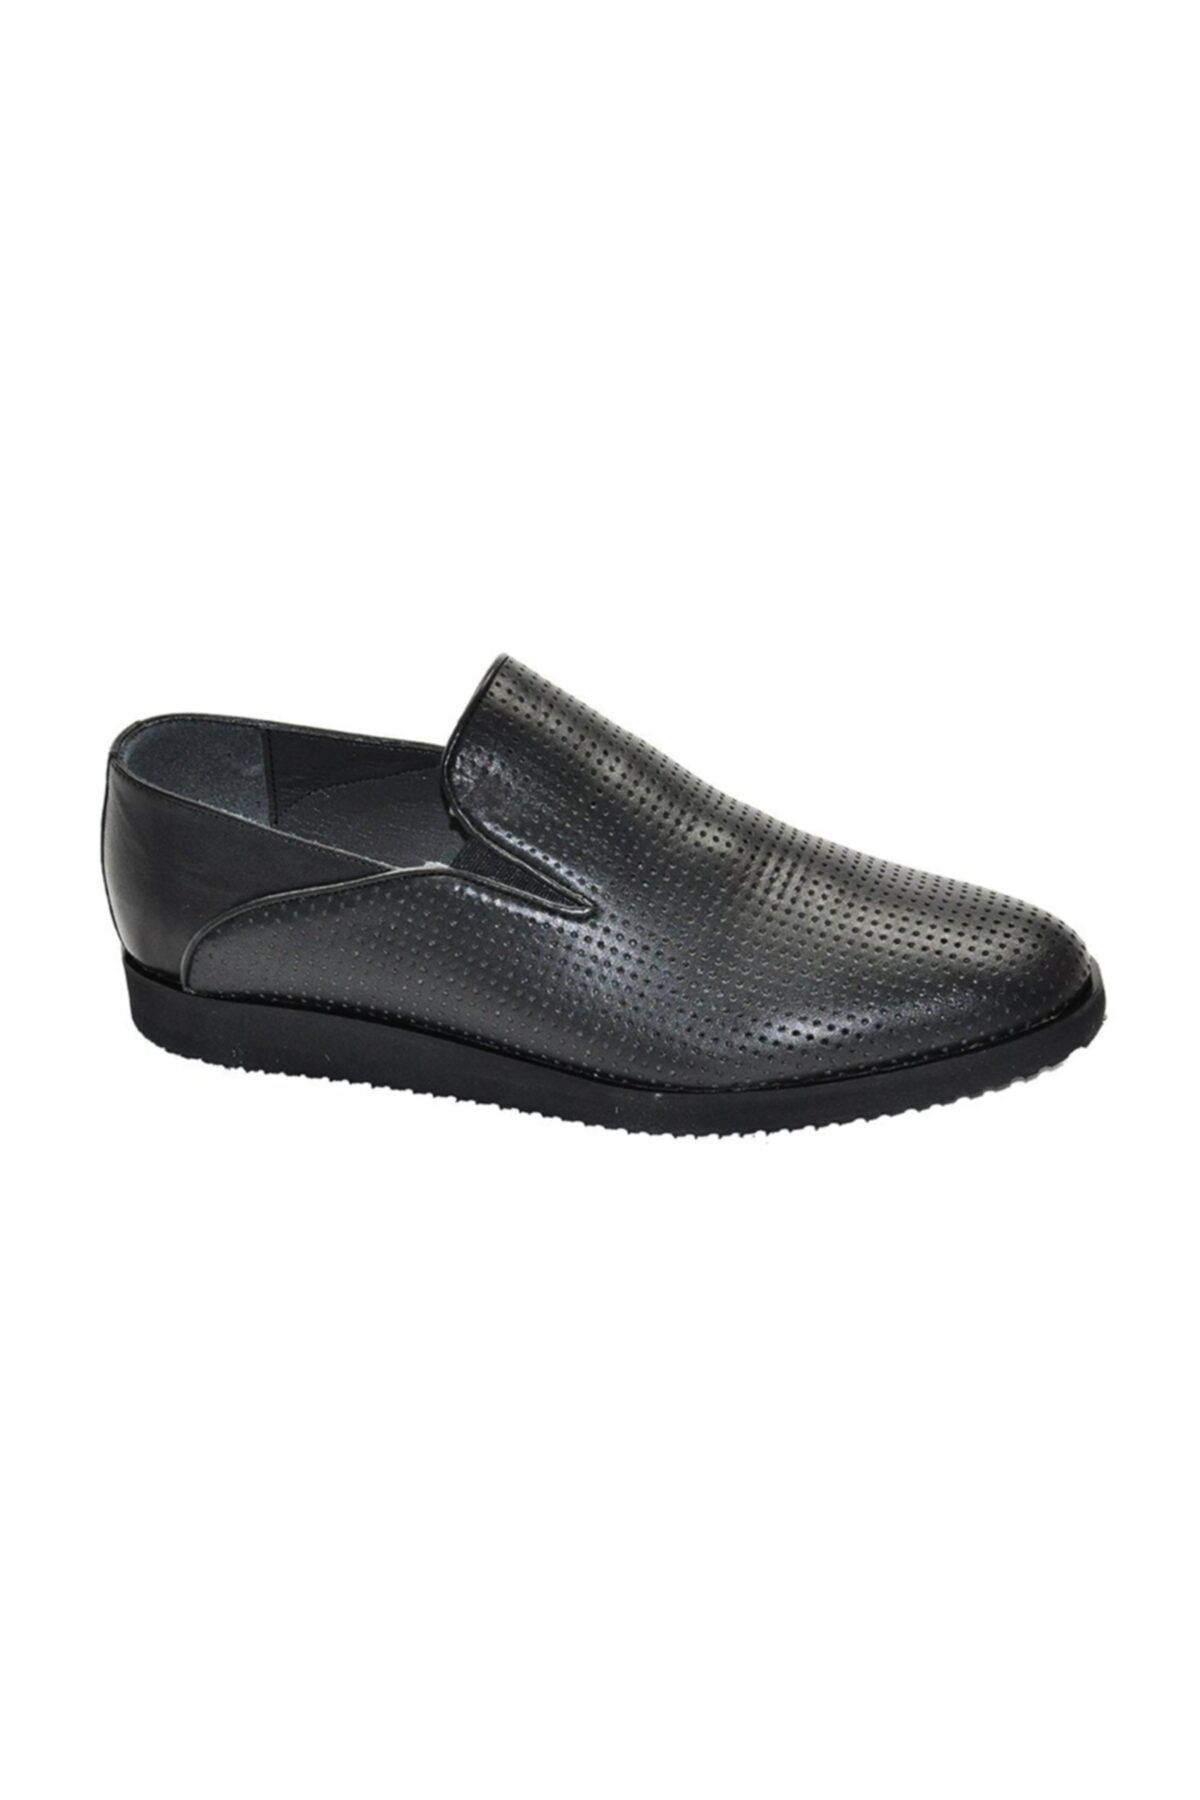 ARİNO Klasik Loafer Ayakkabı Siyah Antik